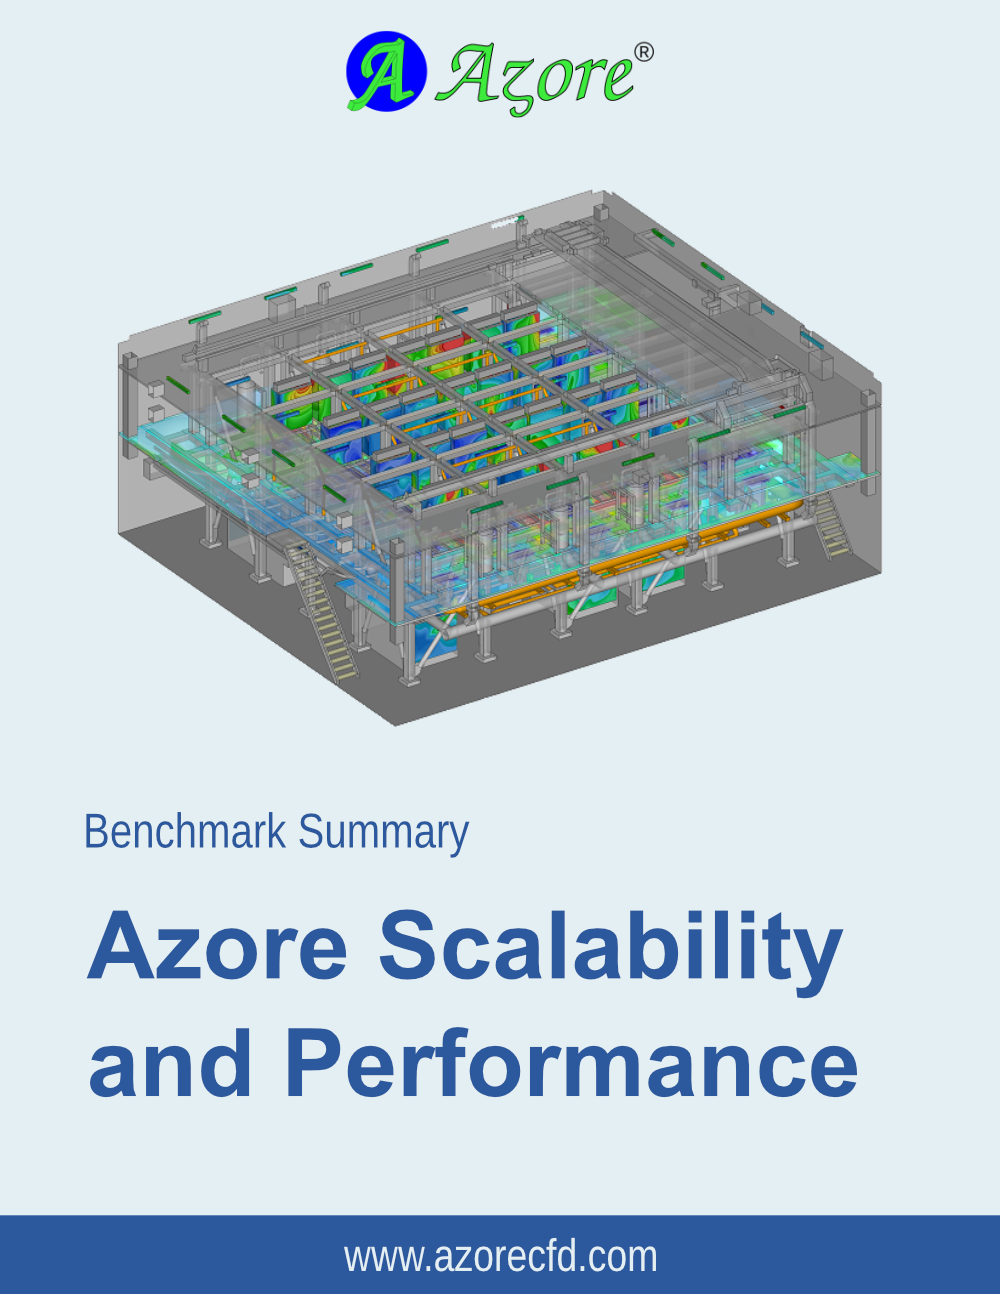 azore-benchmark-summary